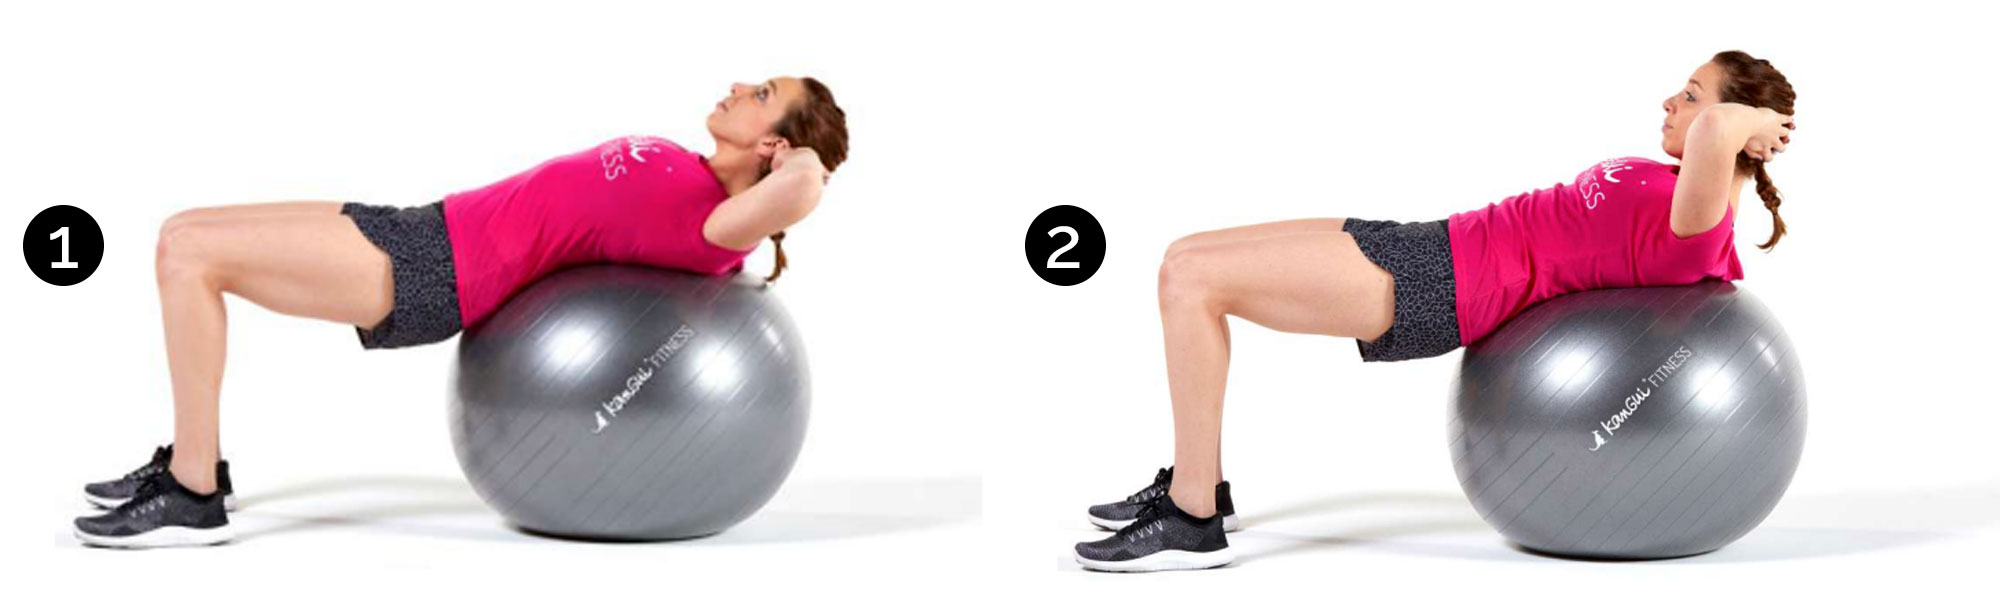 Muscler ses abdos avec un ballon de gym 